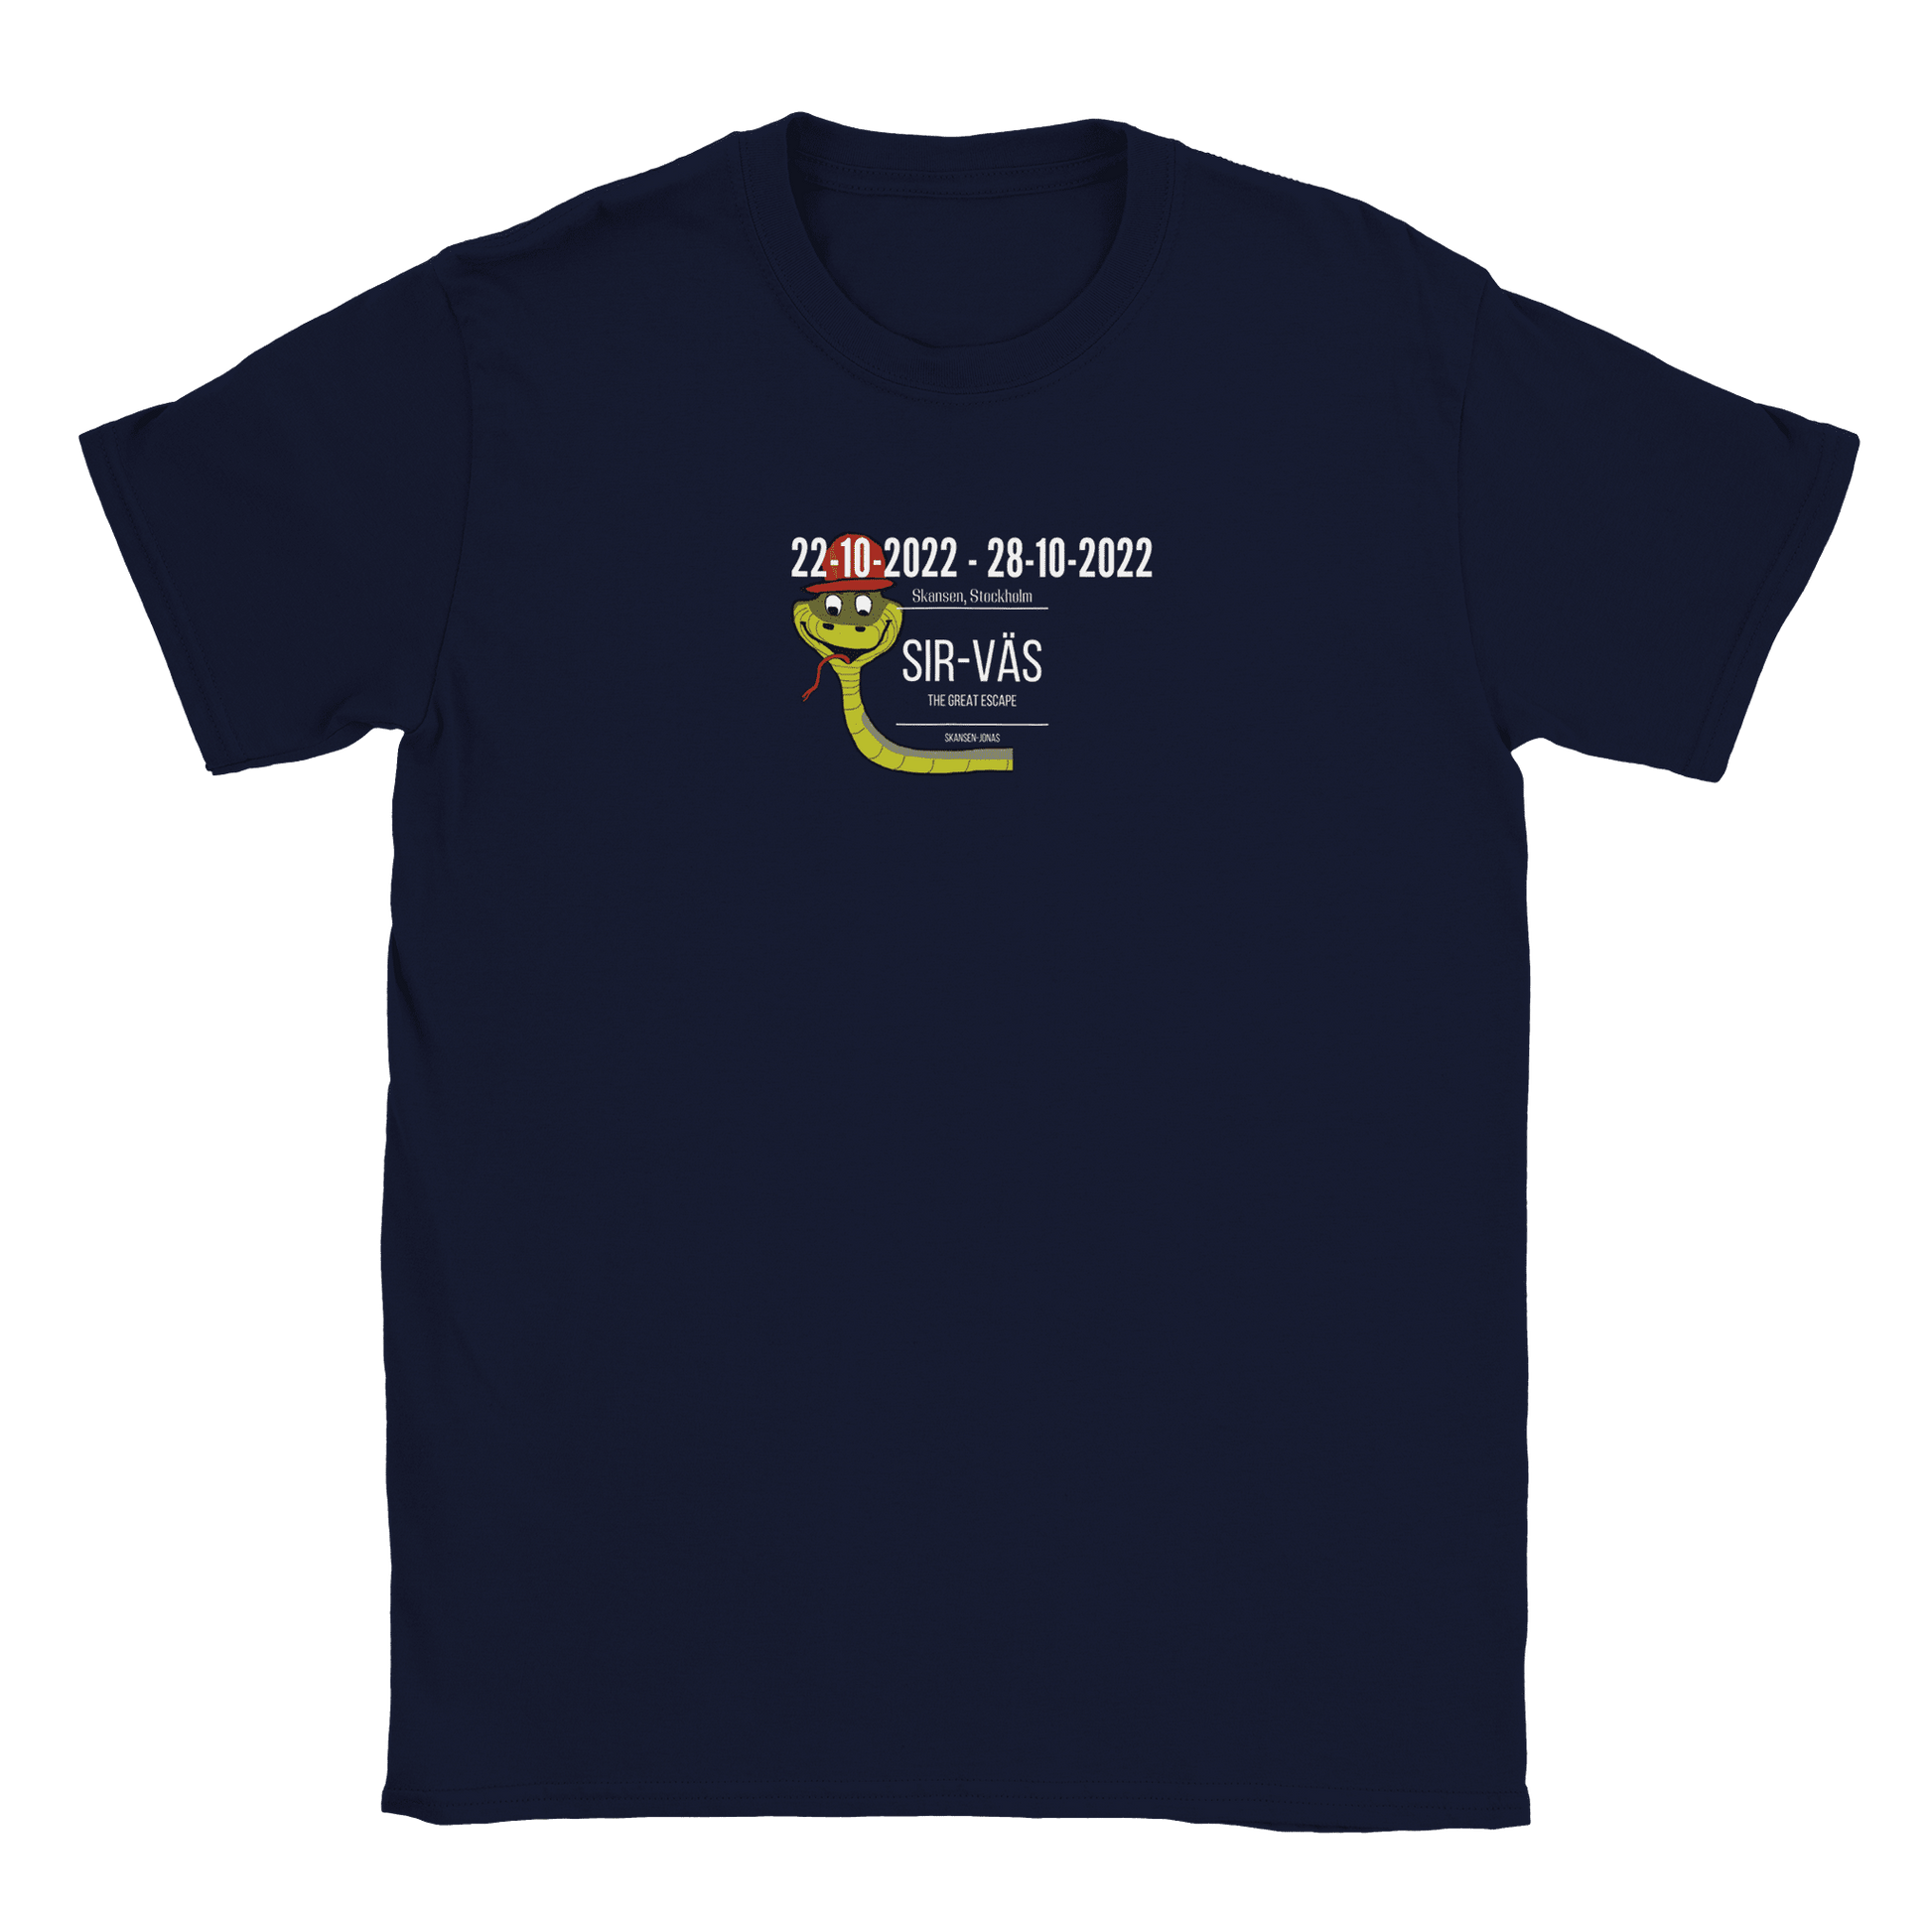 Sir-Väs - T-shirt Navy